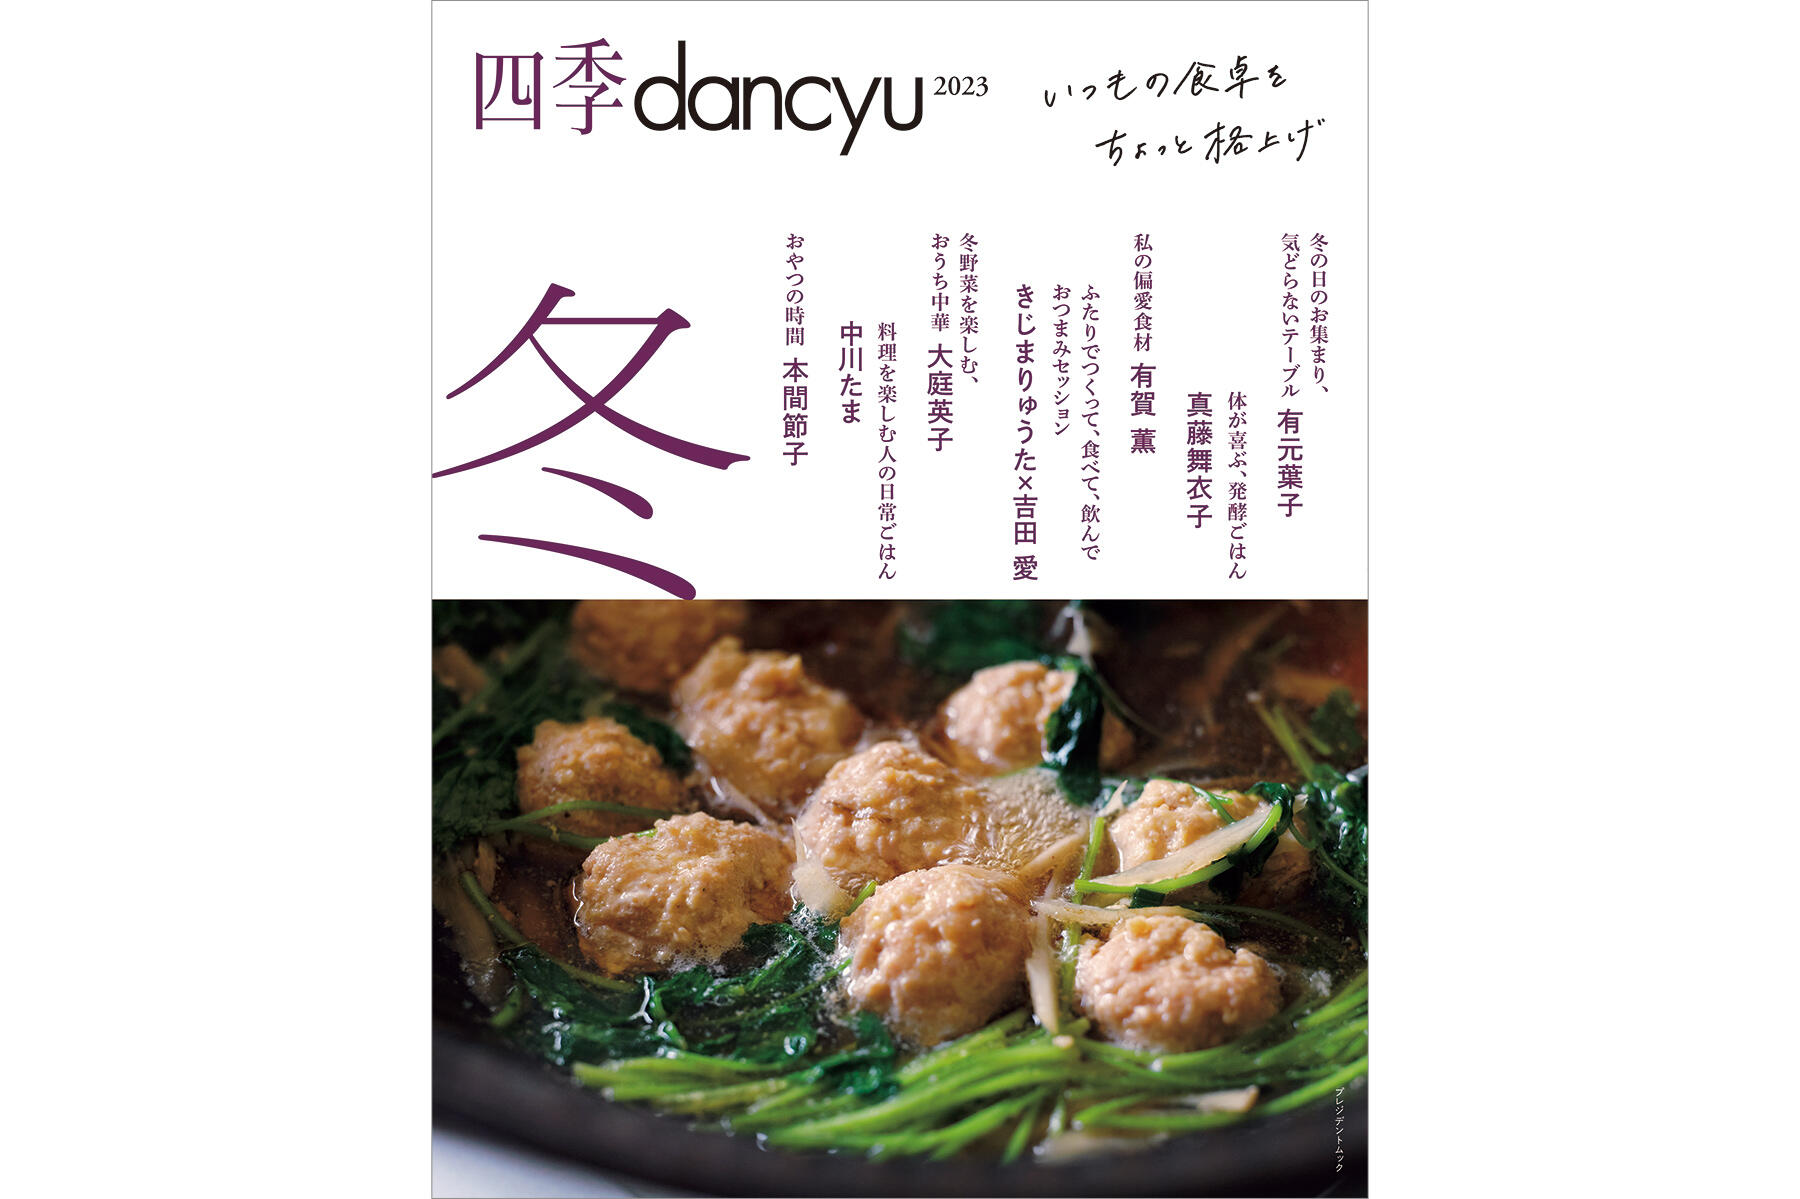 人気料理研究家のレシピ満載！『四季dancyu2023 冬』は本日発売です | dancyuムックから | 【公式】dancyu (ダンチュウ)